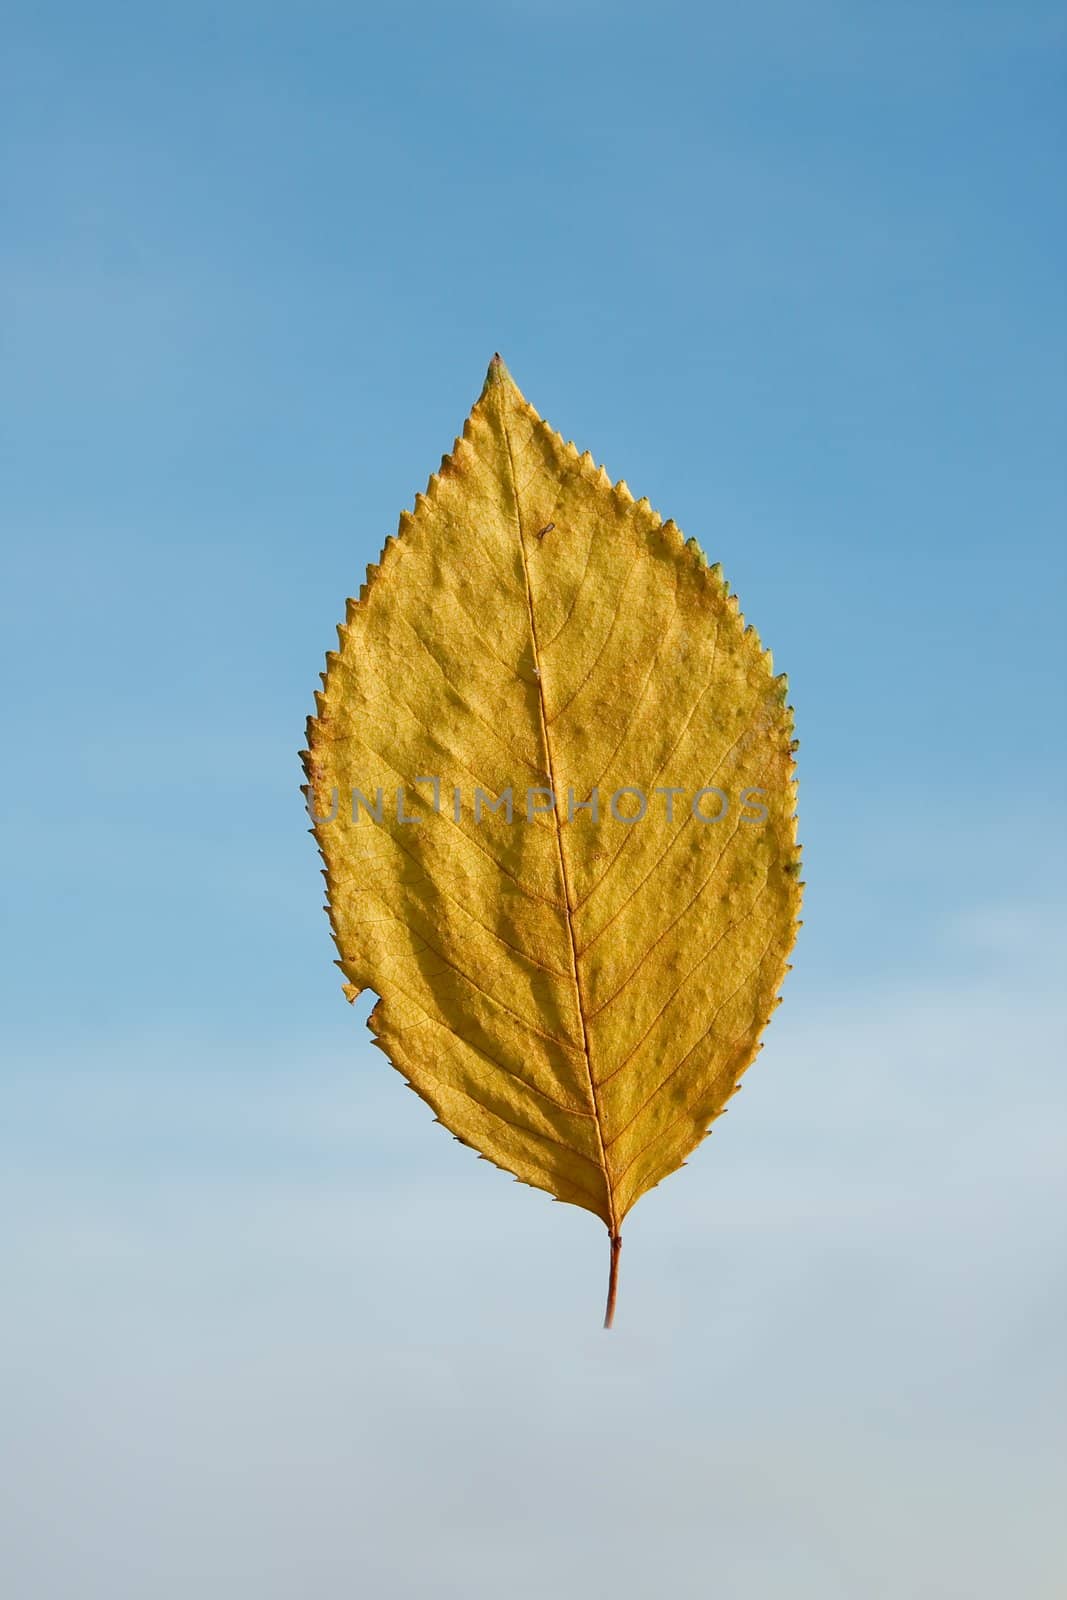 Autumn leaf against blue sky